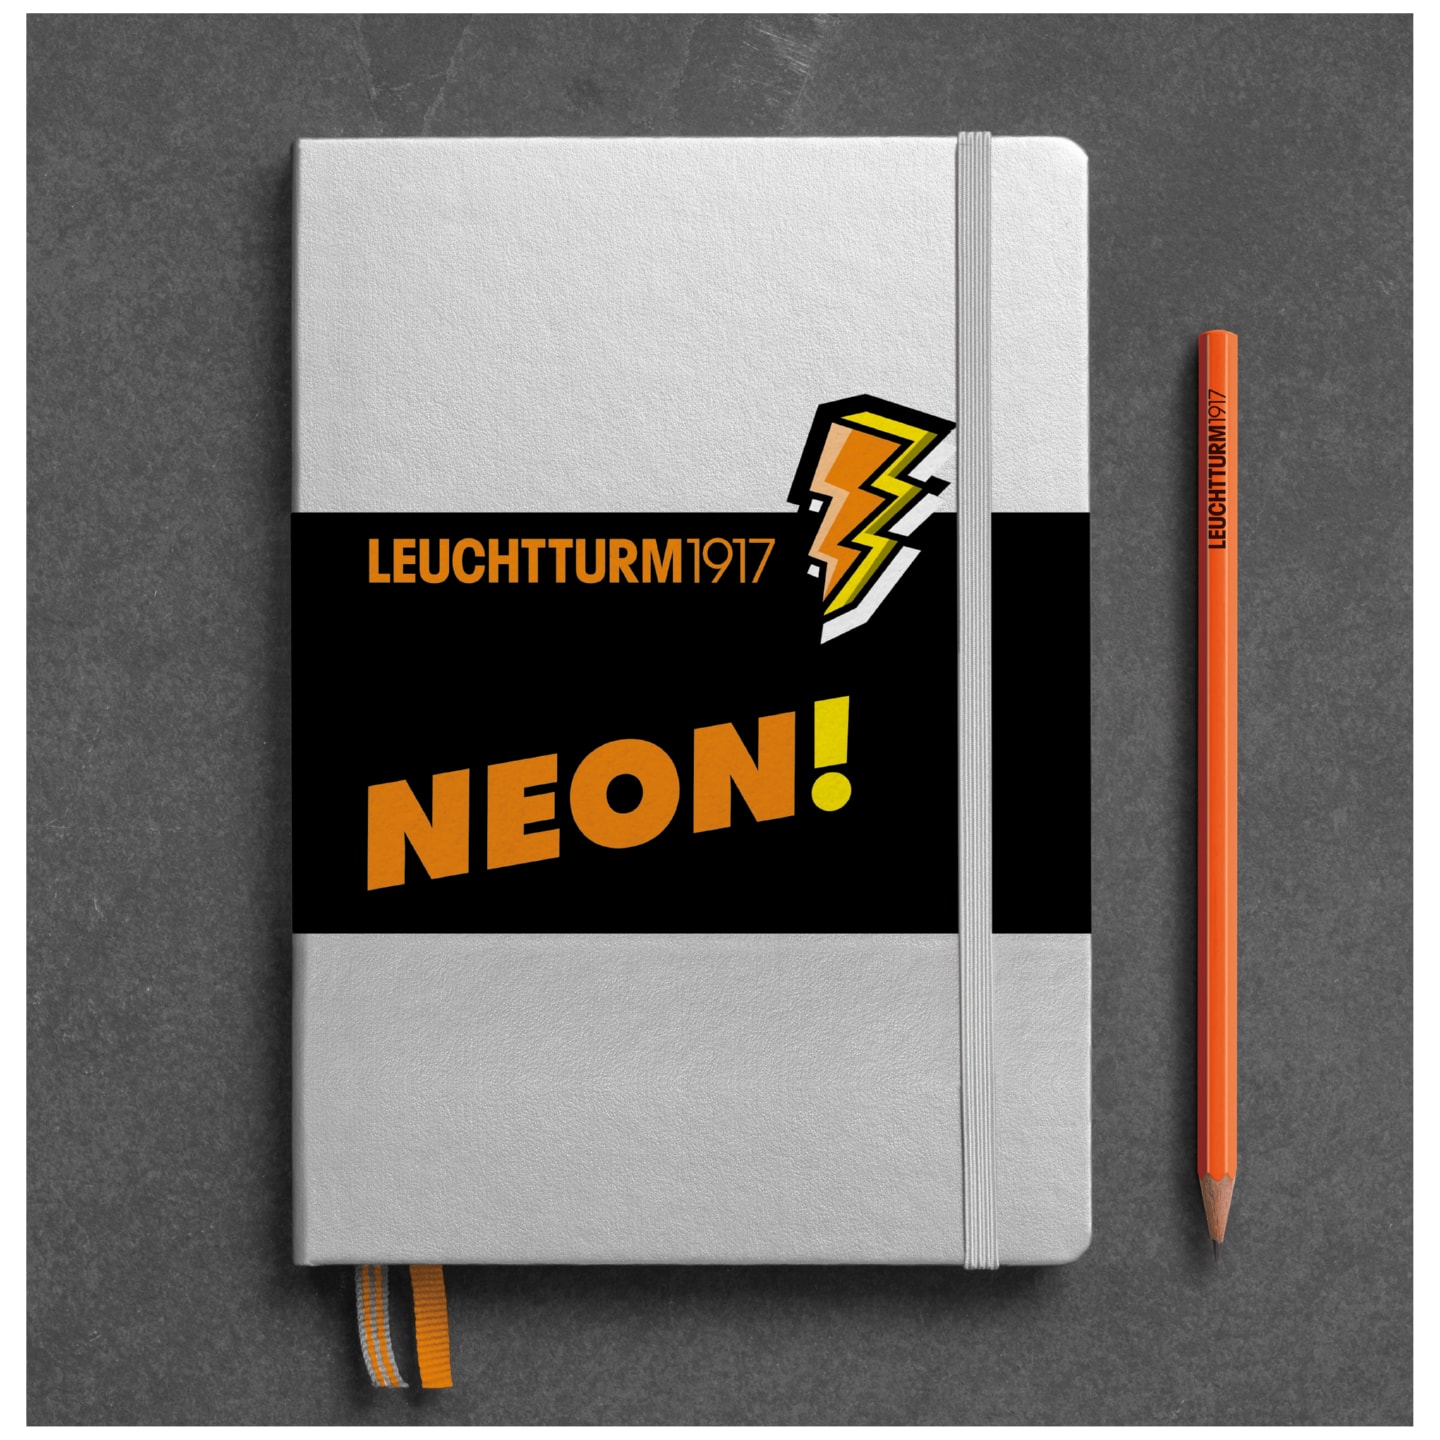 Блокнот Leuchtturm1917 A5 (в точку), юбилейное издание Neon, серебро/оранжевый, 251 стр., твердая обложка